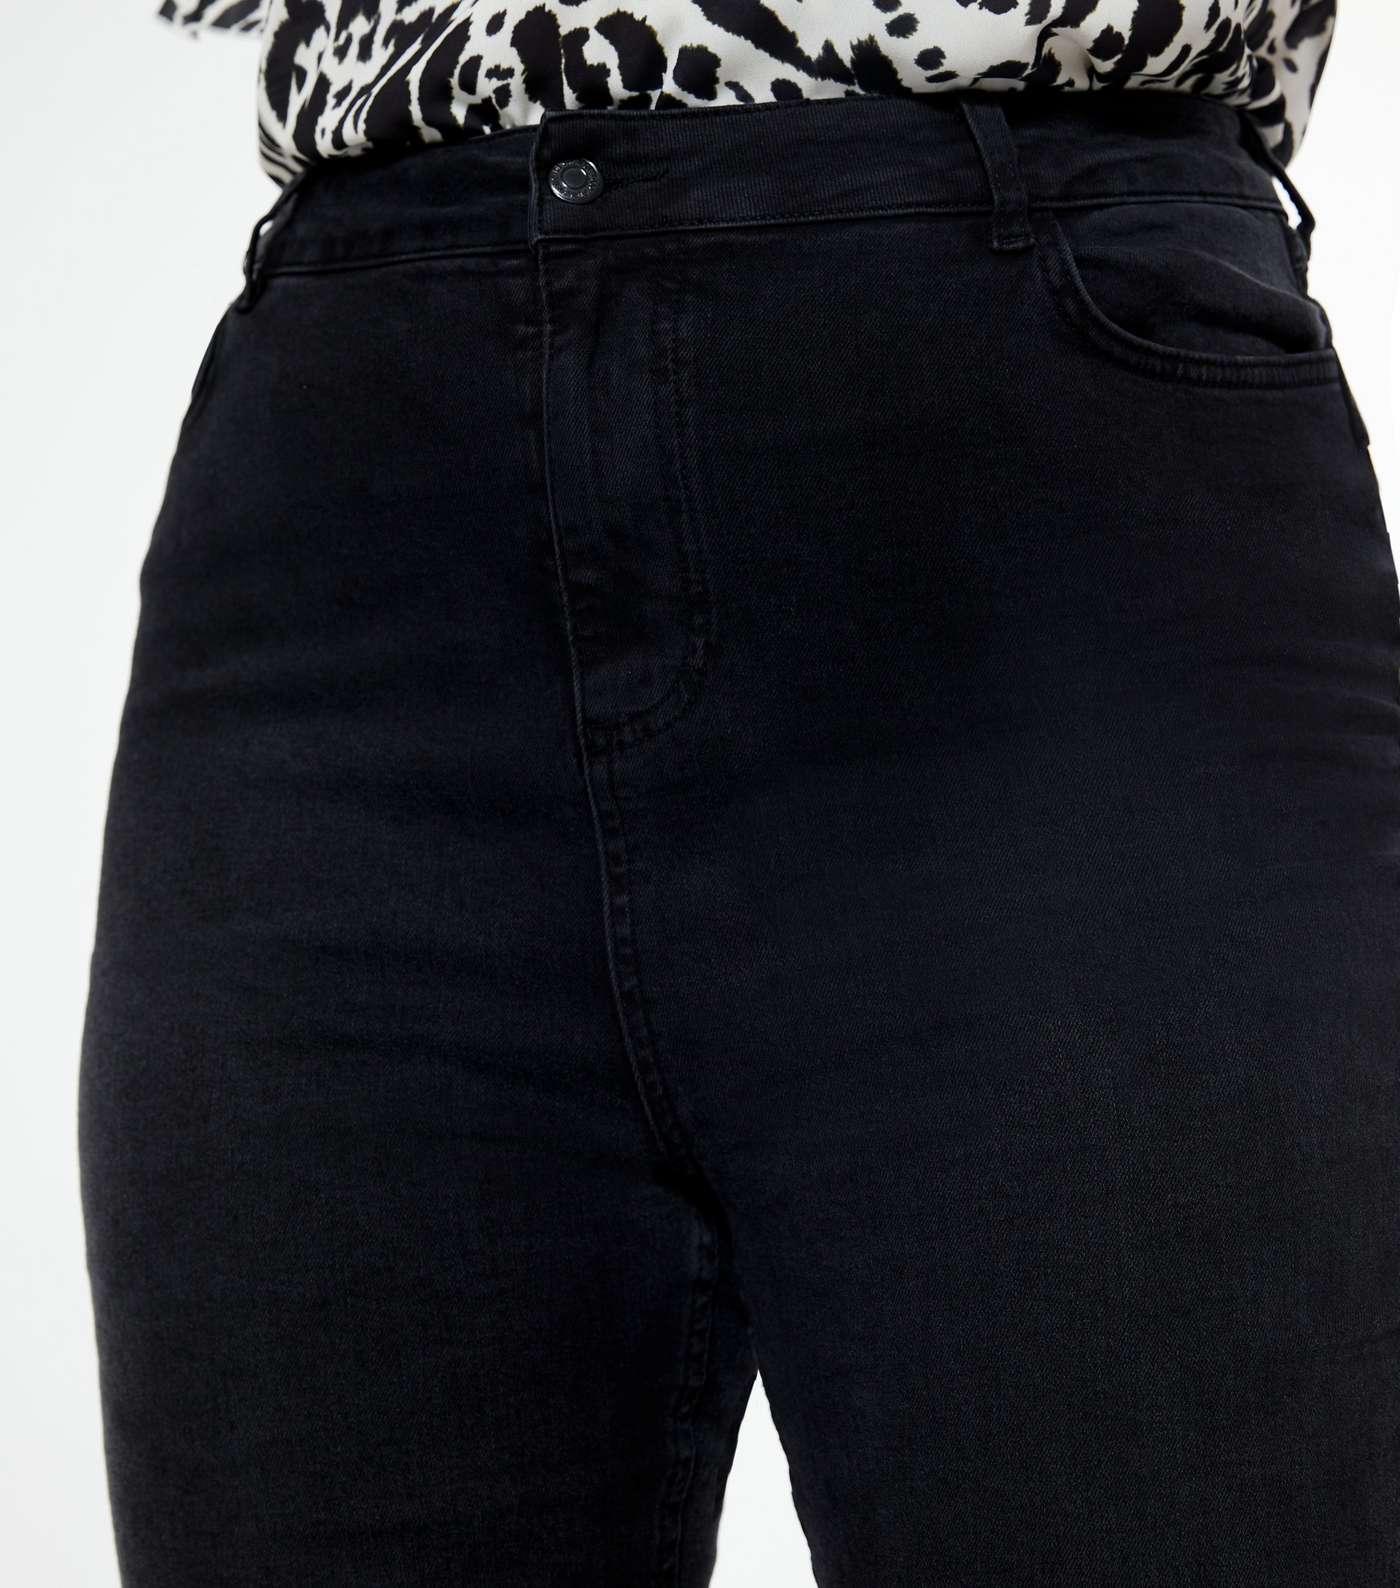 Curves Black 'Lift & Shape' Jenna Skinny Jeans Image 3